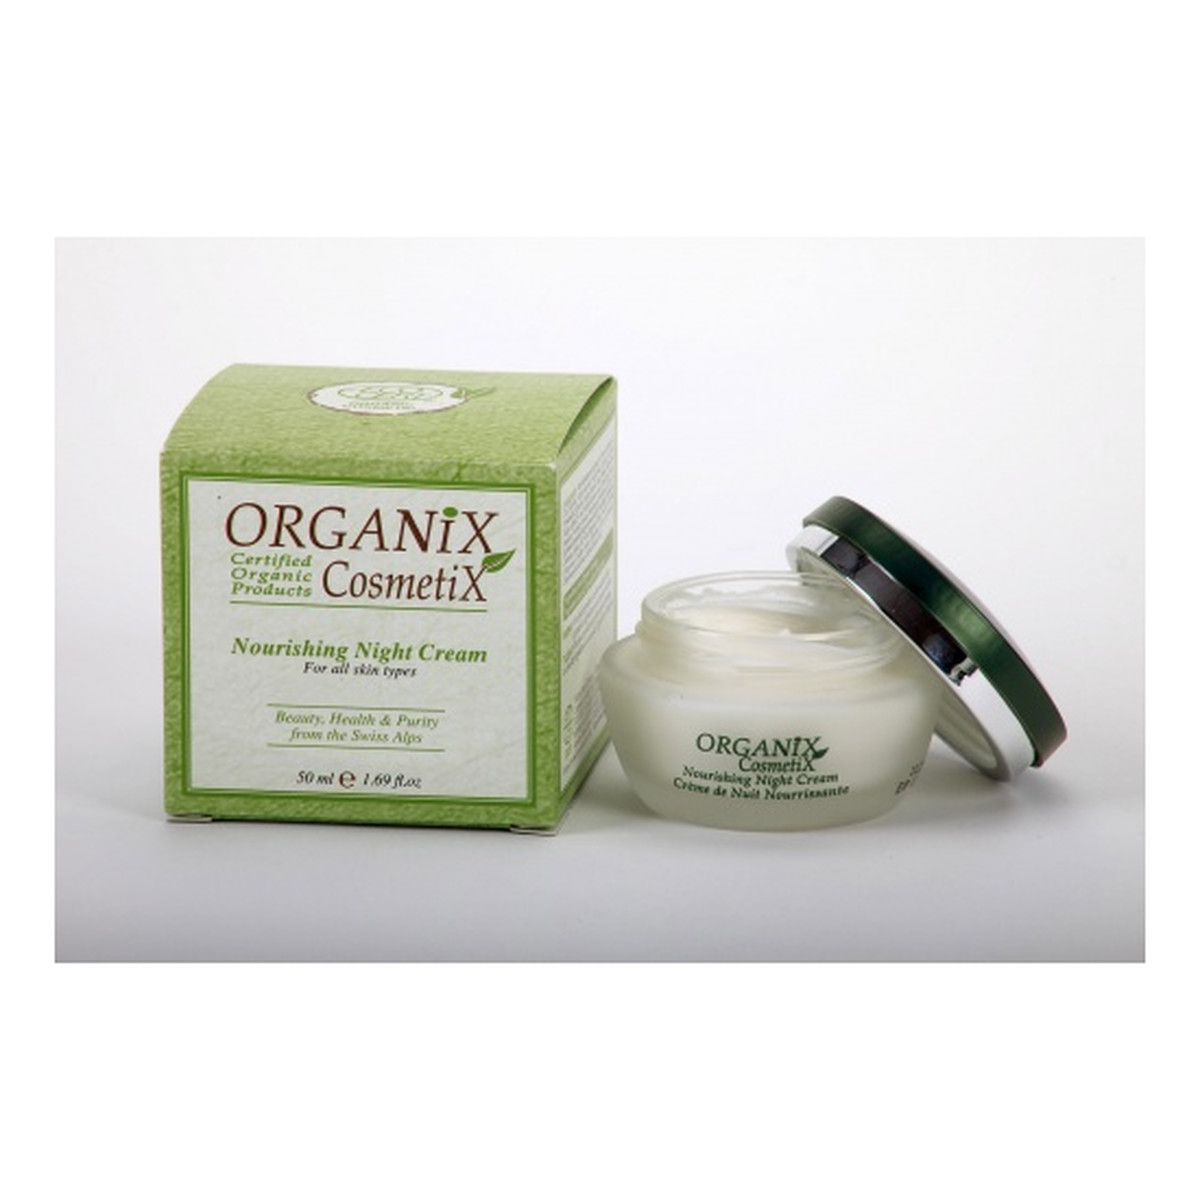 Organix Cosmetix Organiczny odżywczy krem na noc 50ml